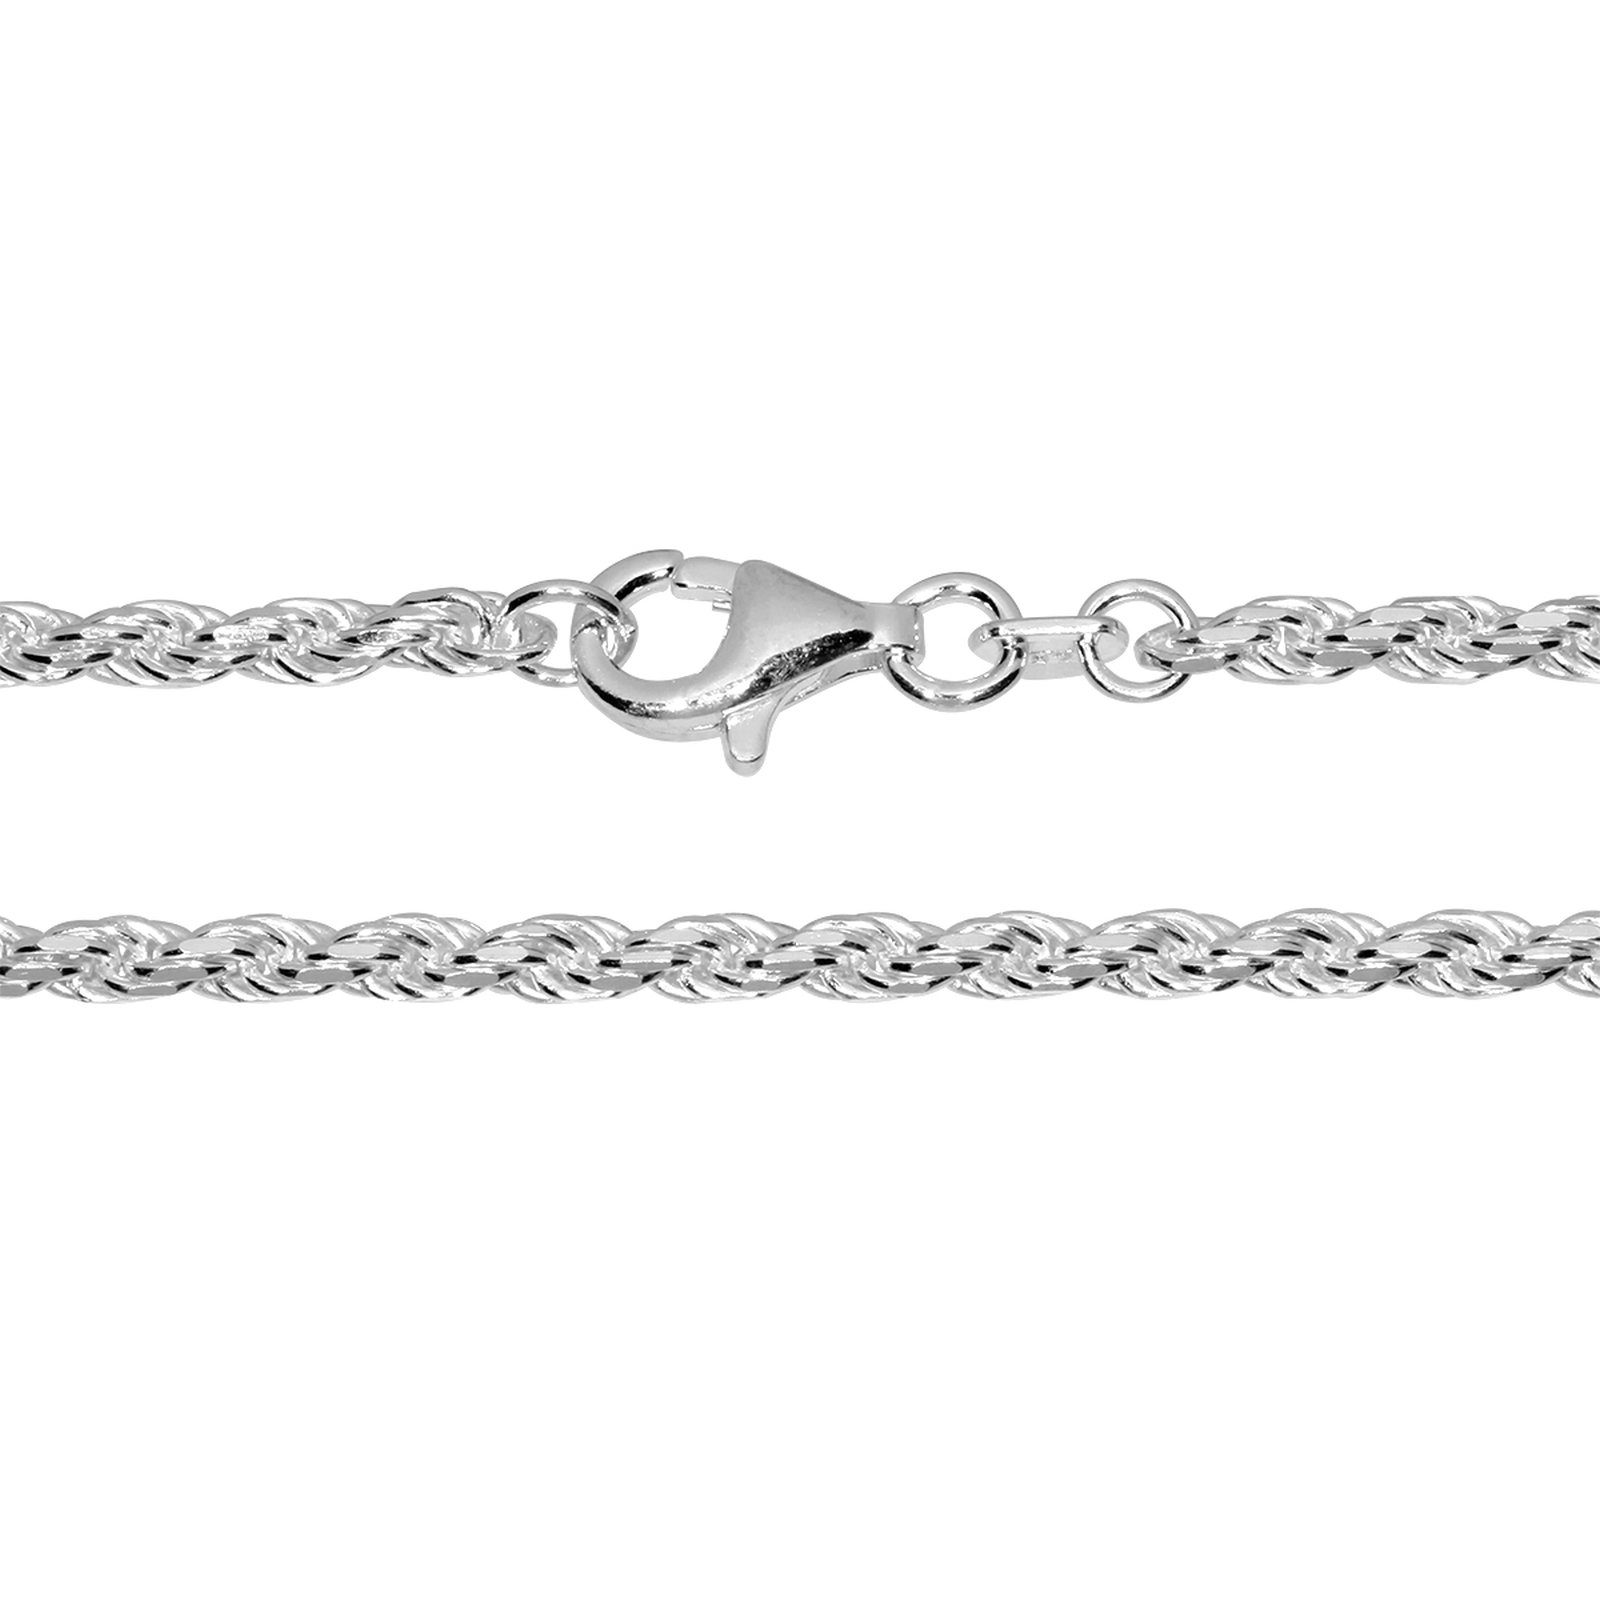 OSTSEE-SCHMUCK Silberkette »- Kordel 2,2 mm - Silber 925/000 -,« (1-tlg)  online kaufen | OTTO